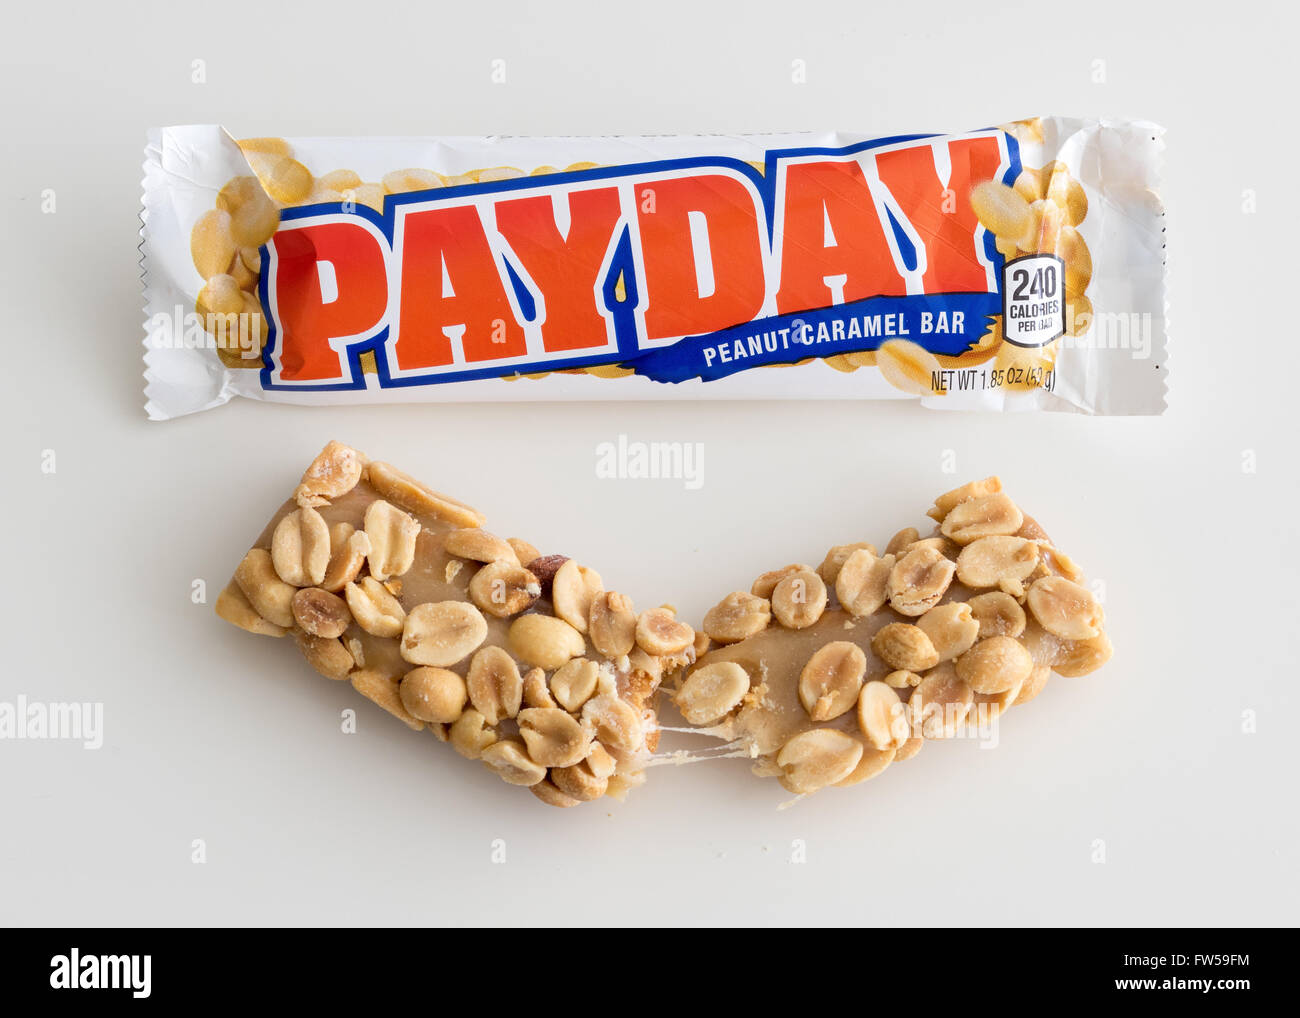 Un PayDay candy bar, che è prodotta dall'Hershey Company. Foto Stock